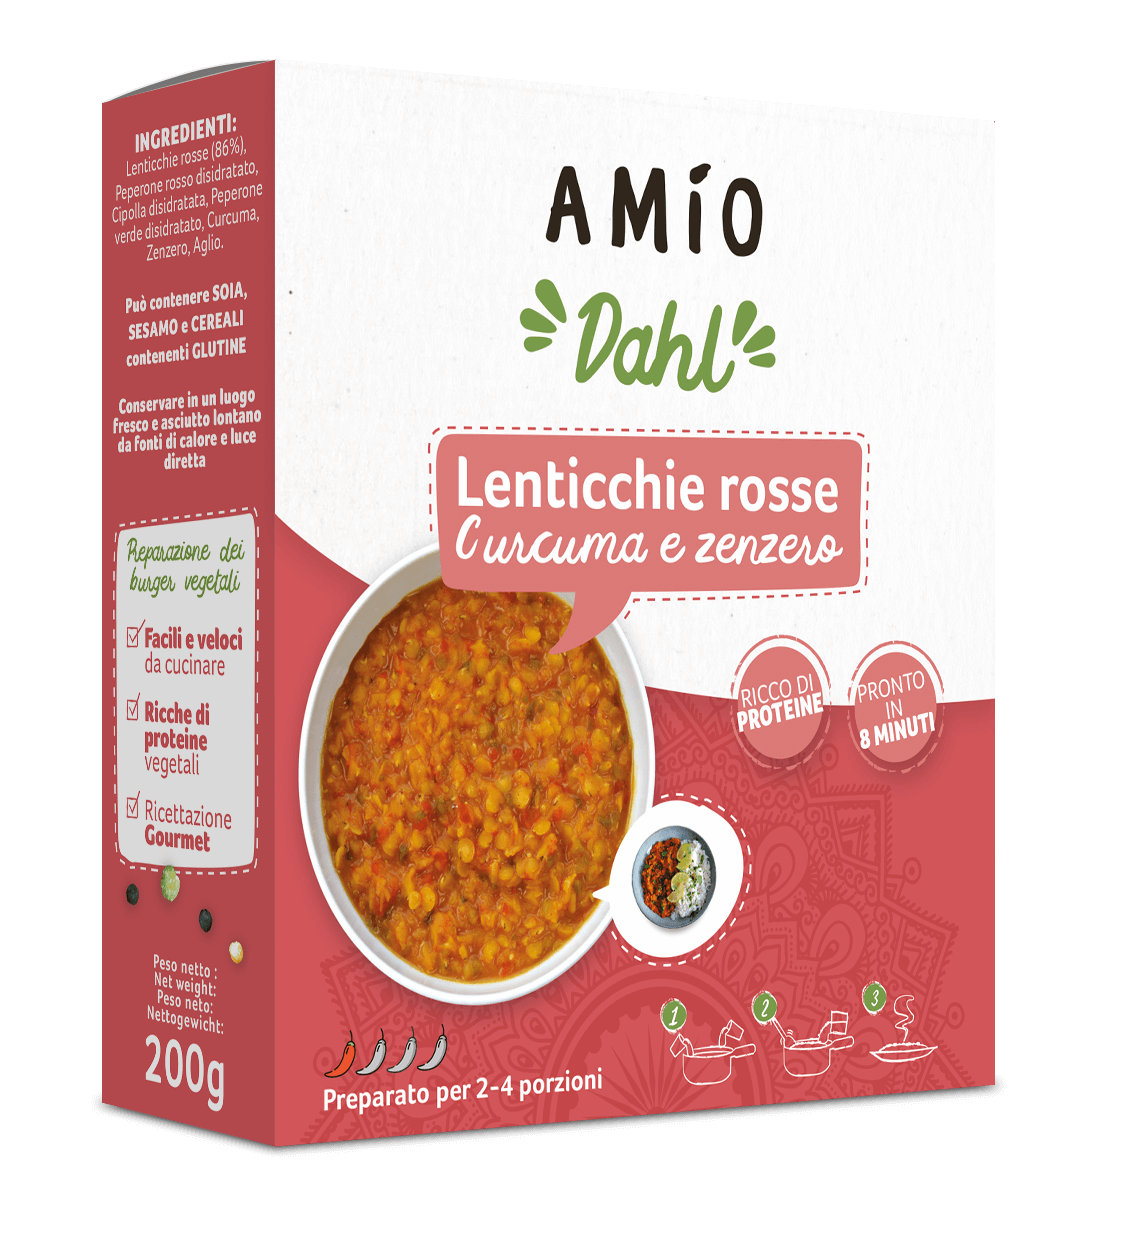 Product lenticchie rosse